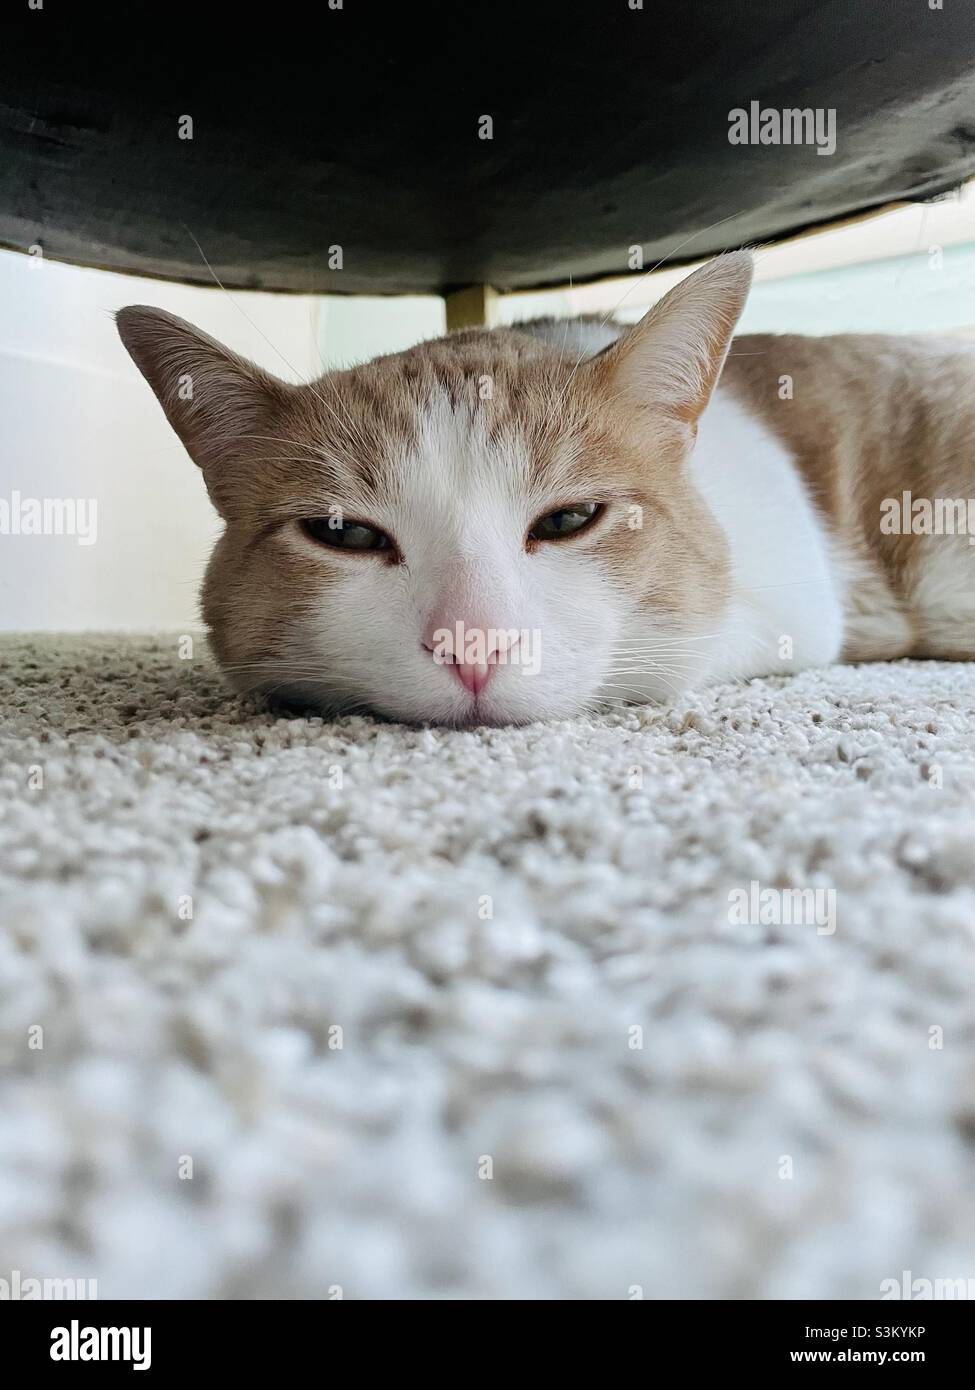 Nette Katze versteckt sich unter dem Bett schlafen Stockfotografie - Alamy